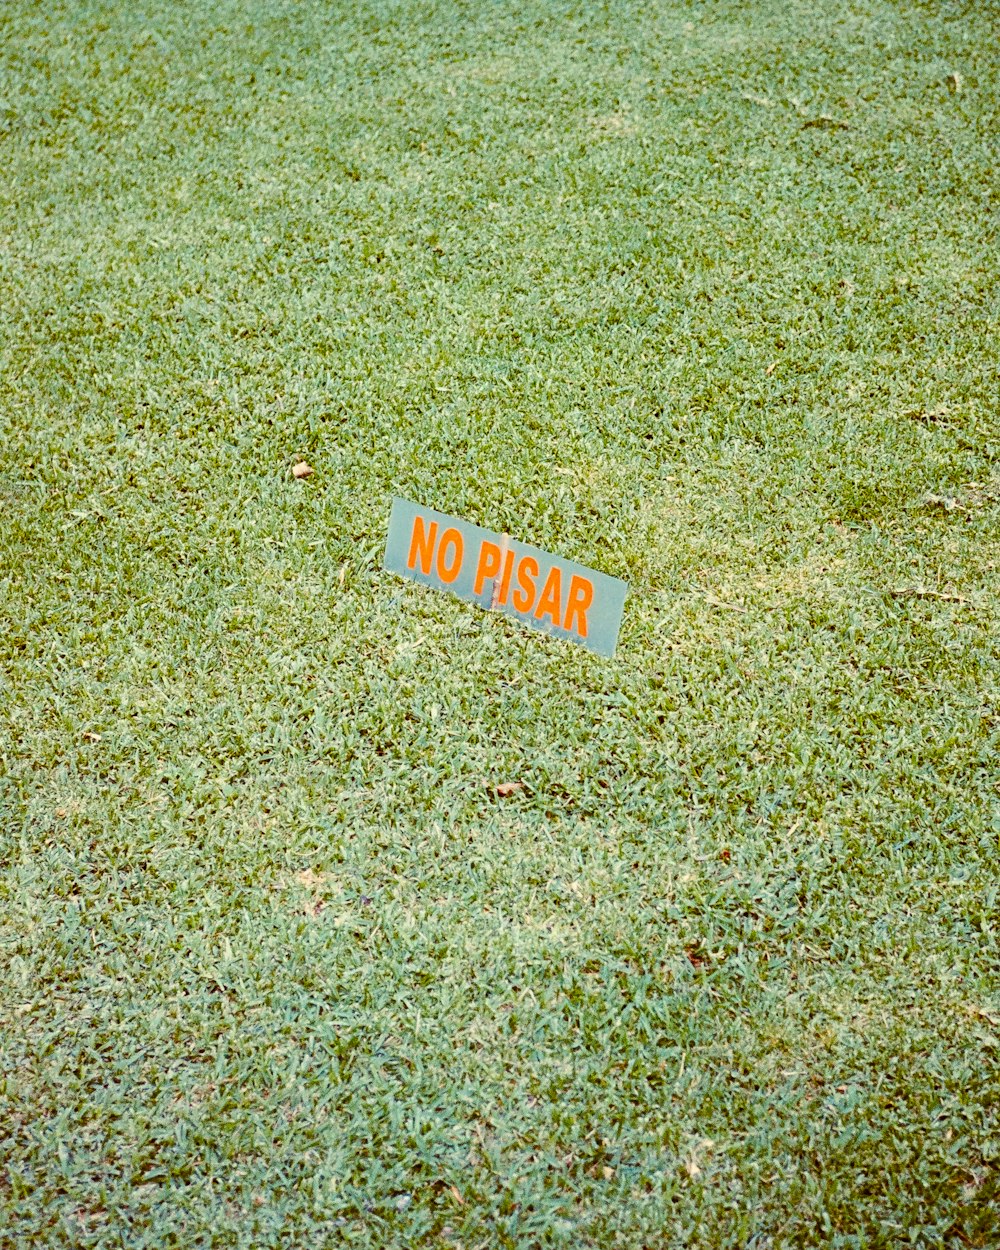 풀밭에 앉아있는 표지판